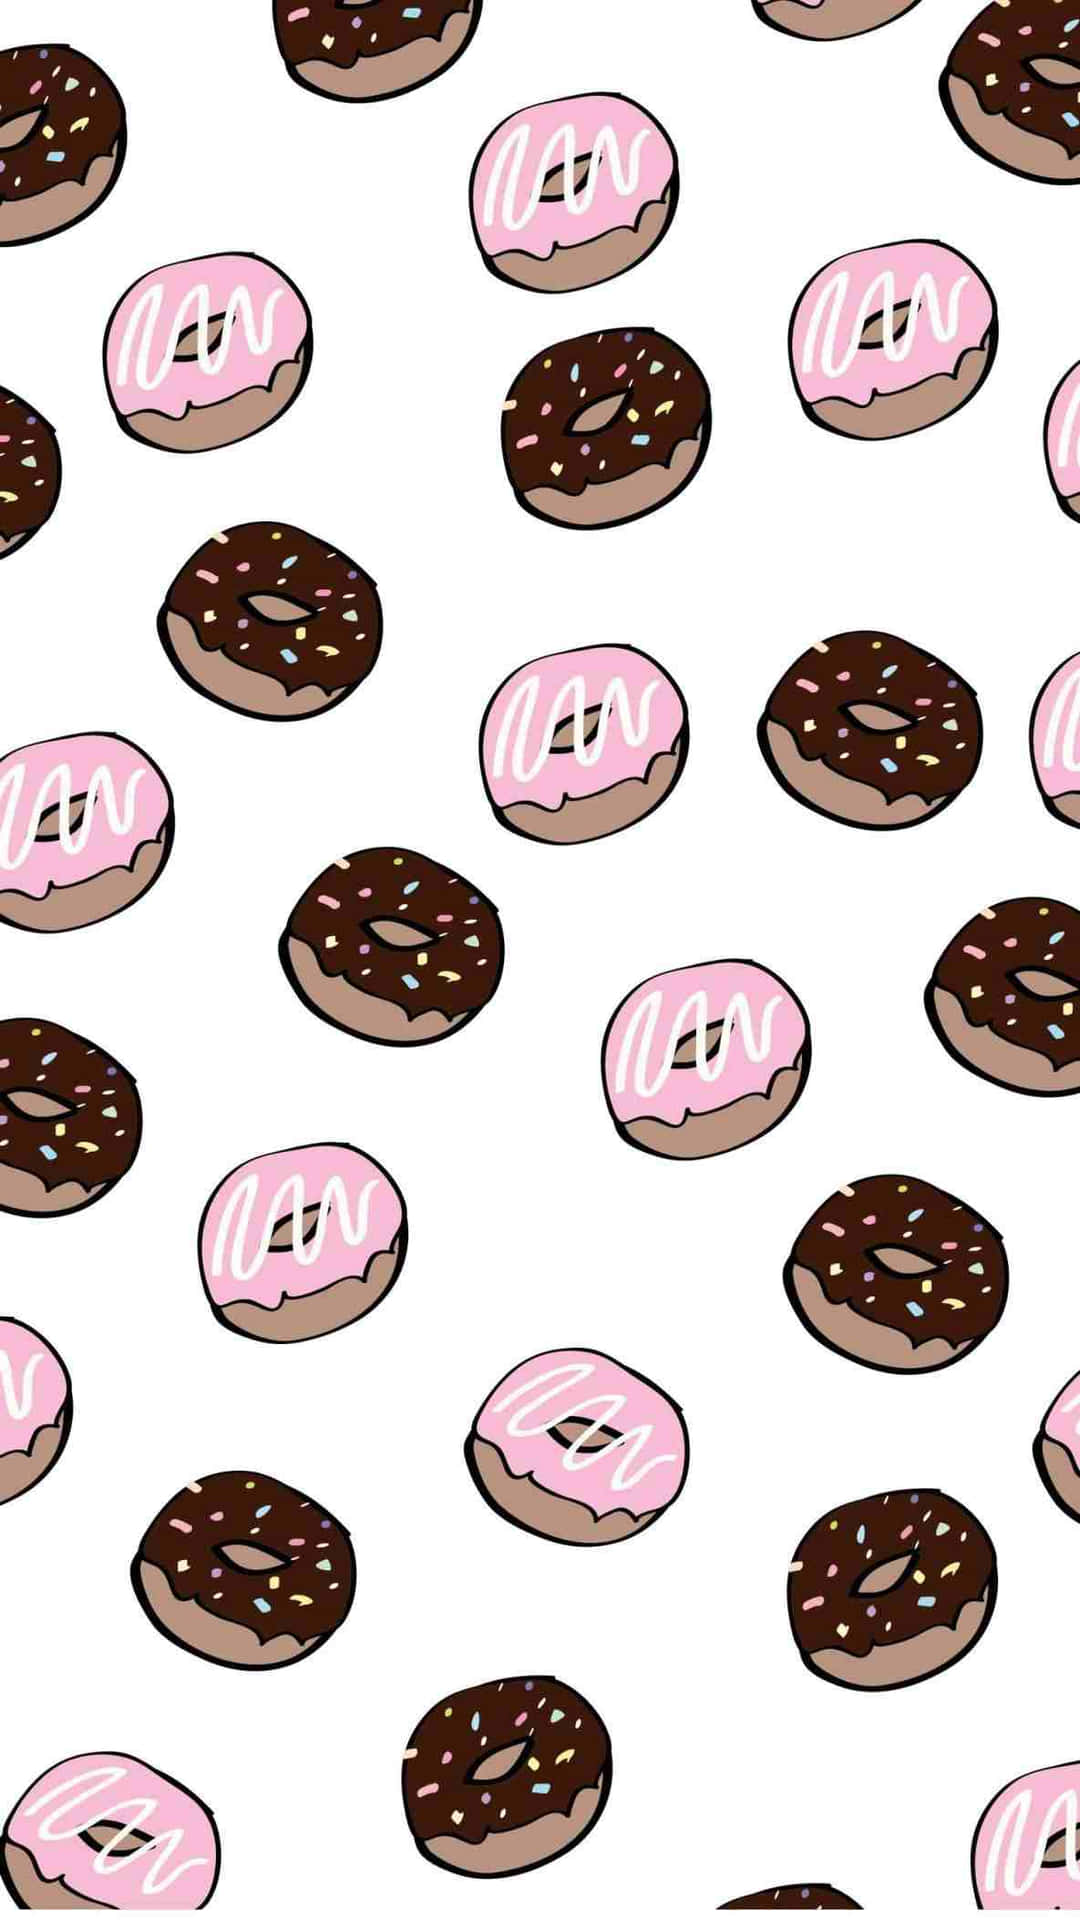 27+] Donut Wallpaper - WallpaperSafari